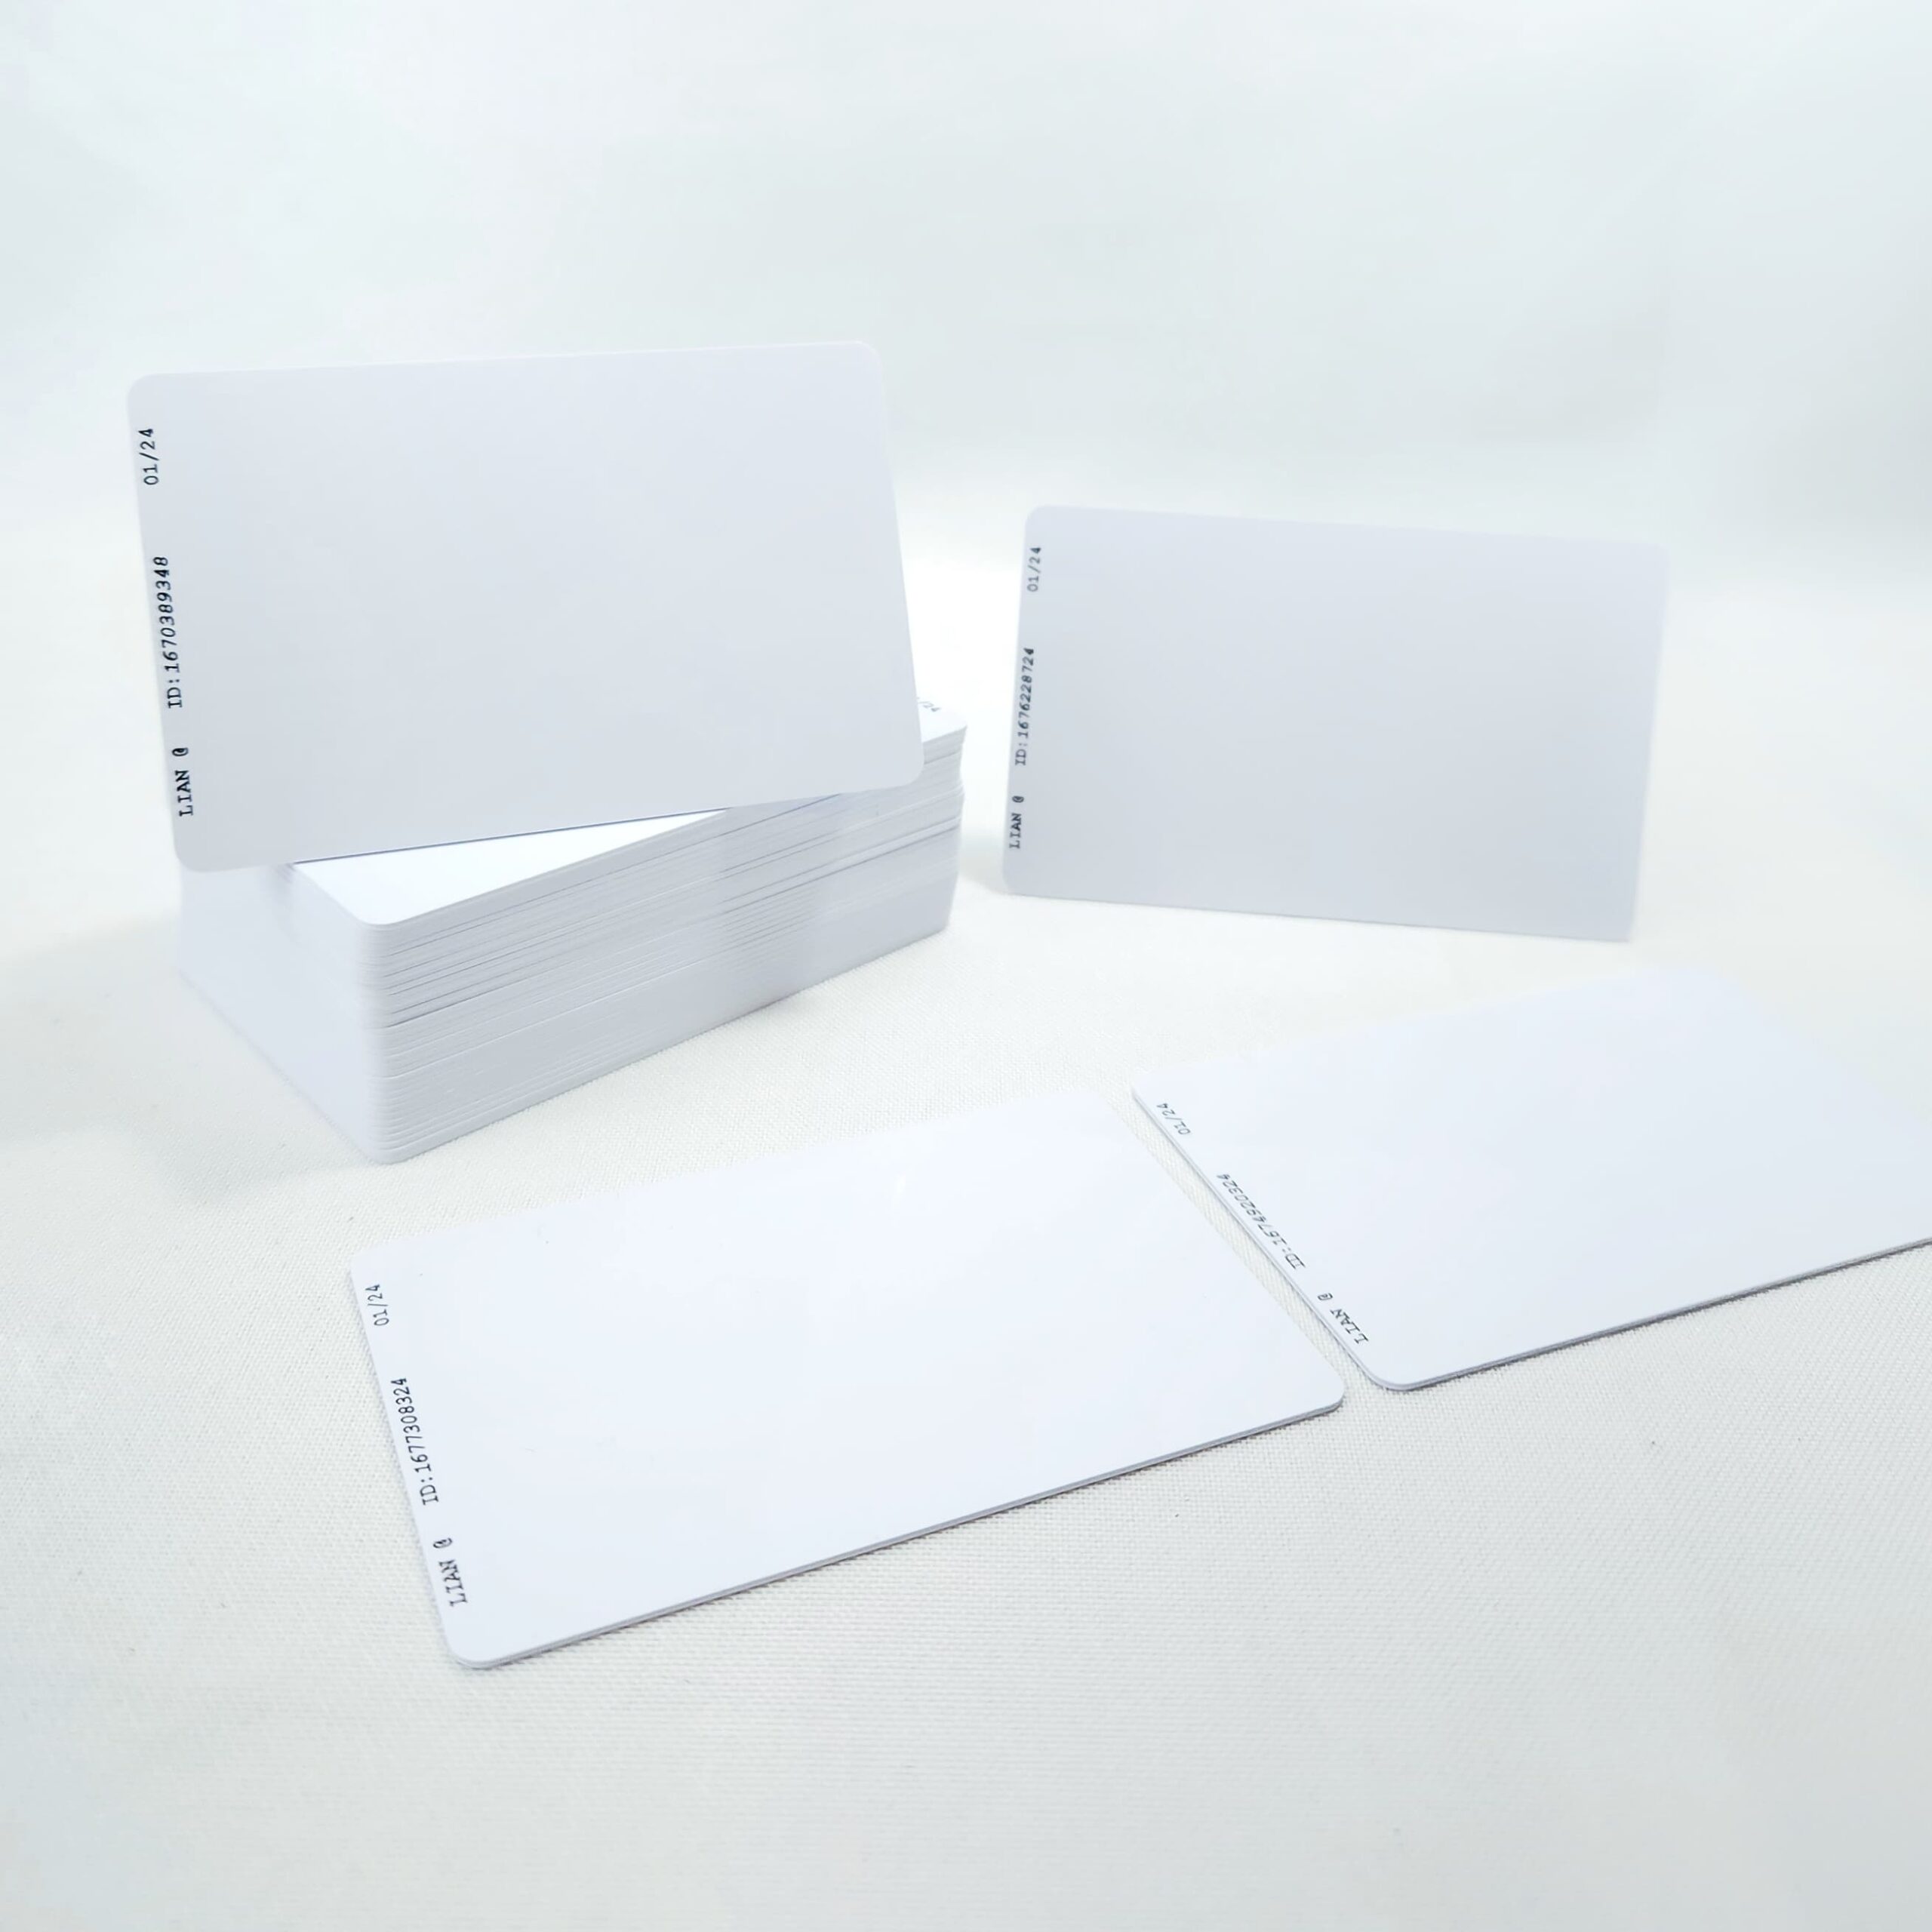 Cartão de proximidade Mifare 1K - Lian Card